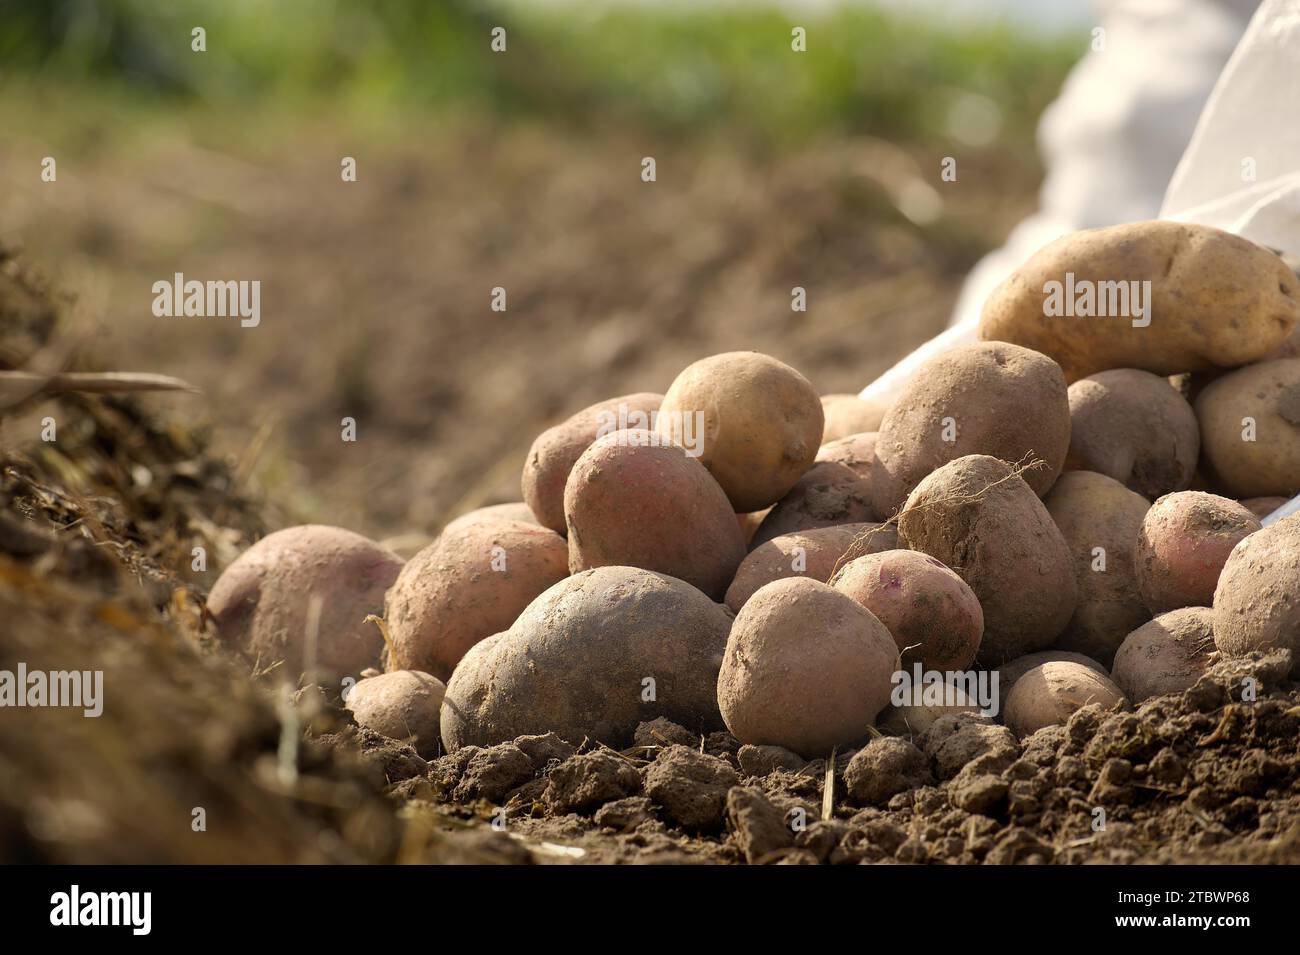 Neu gegraben Kartoffeln in einem Bio-Familie Bauernhof Feld, niedrigen Winkel Blick auf reiche braune Erde in einem Konzept des Lebensmittelanbaus Stockfoto